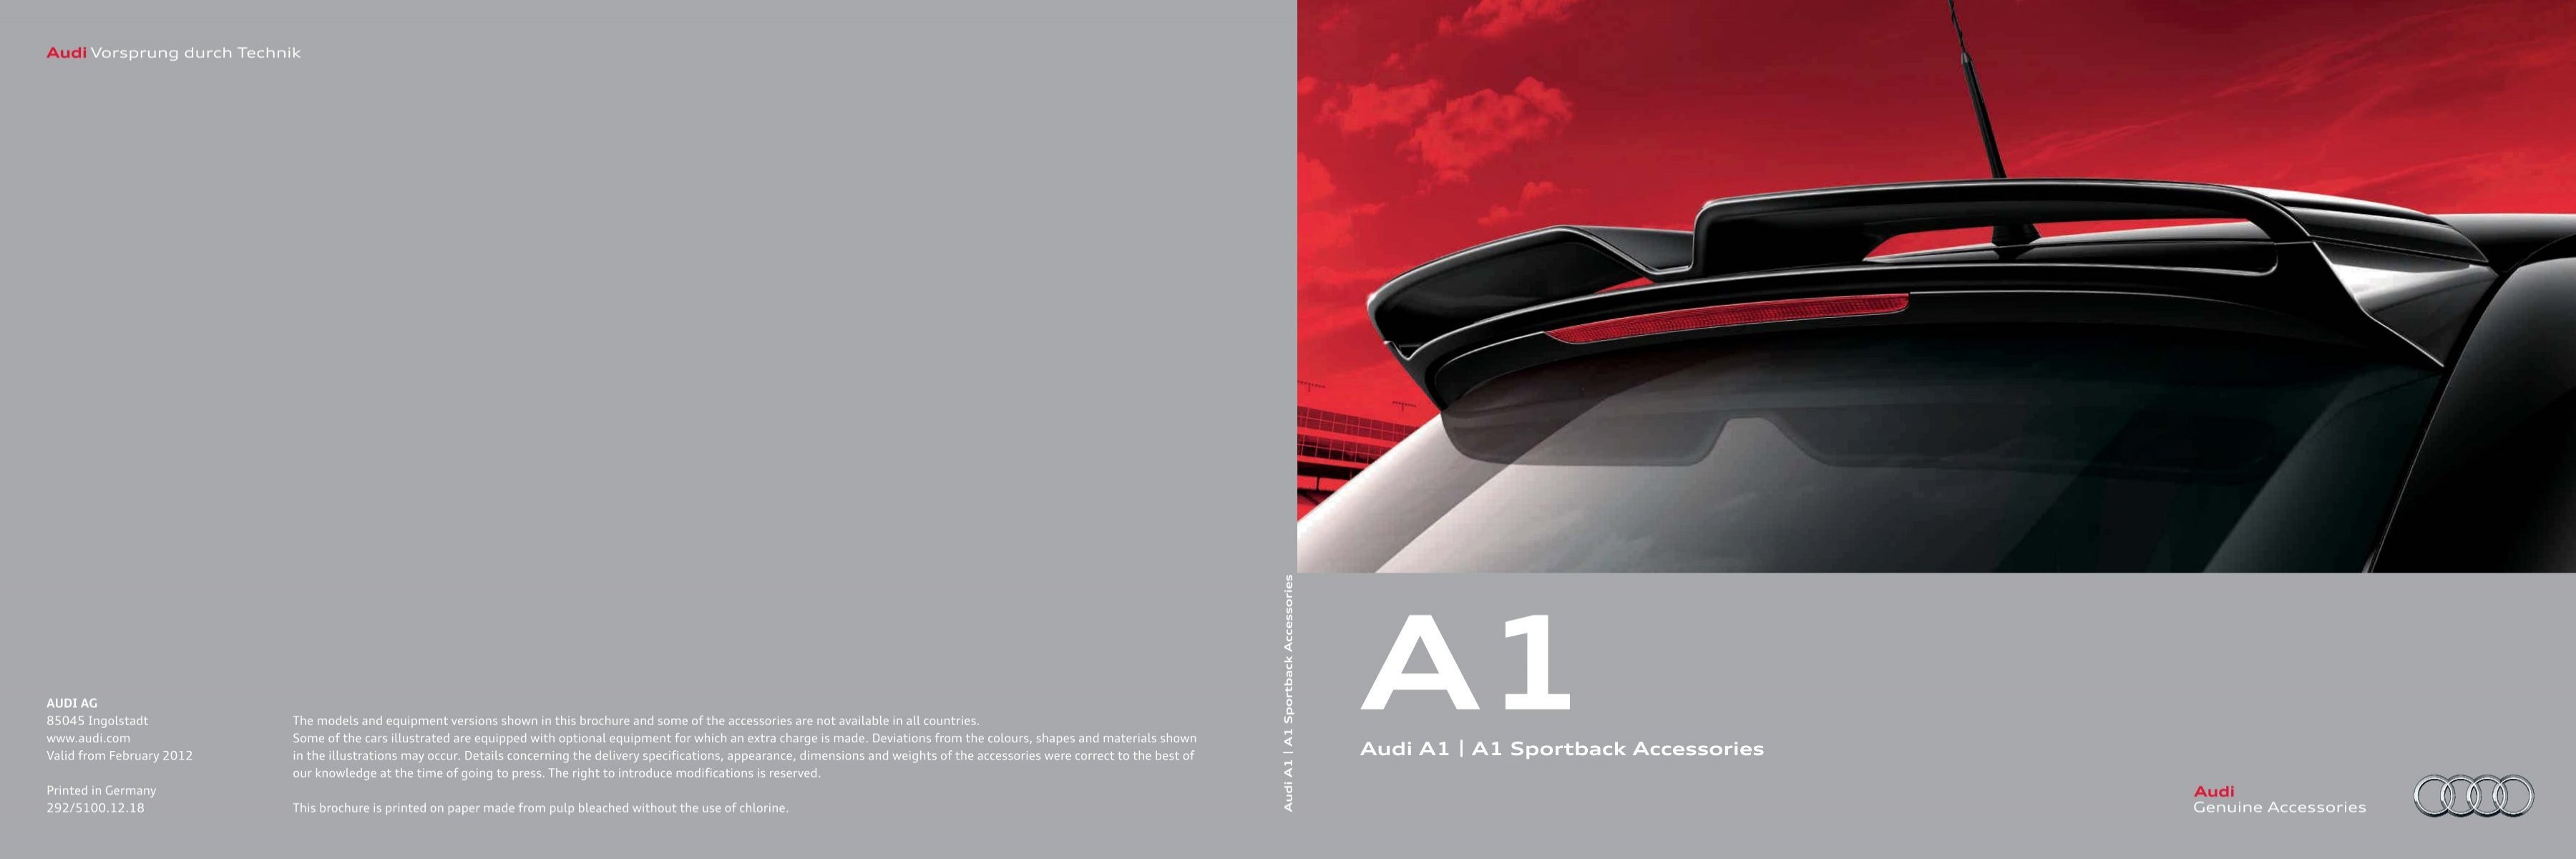 Audi A1 accessories